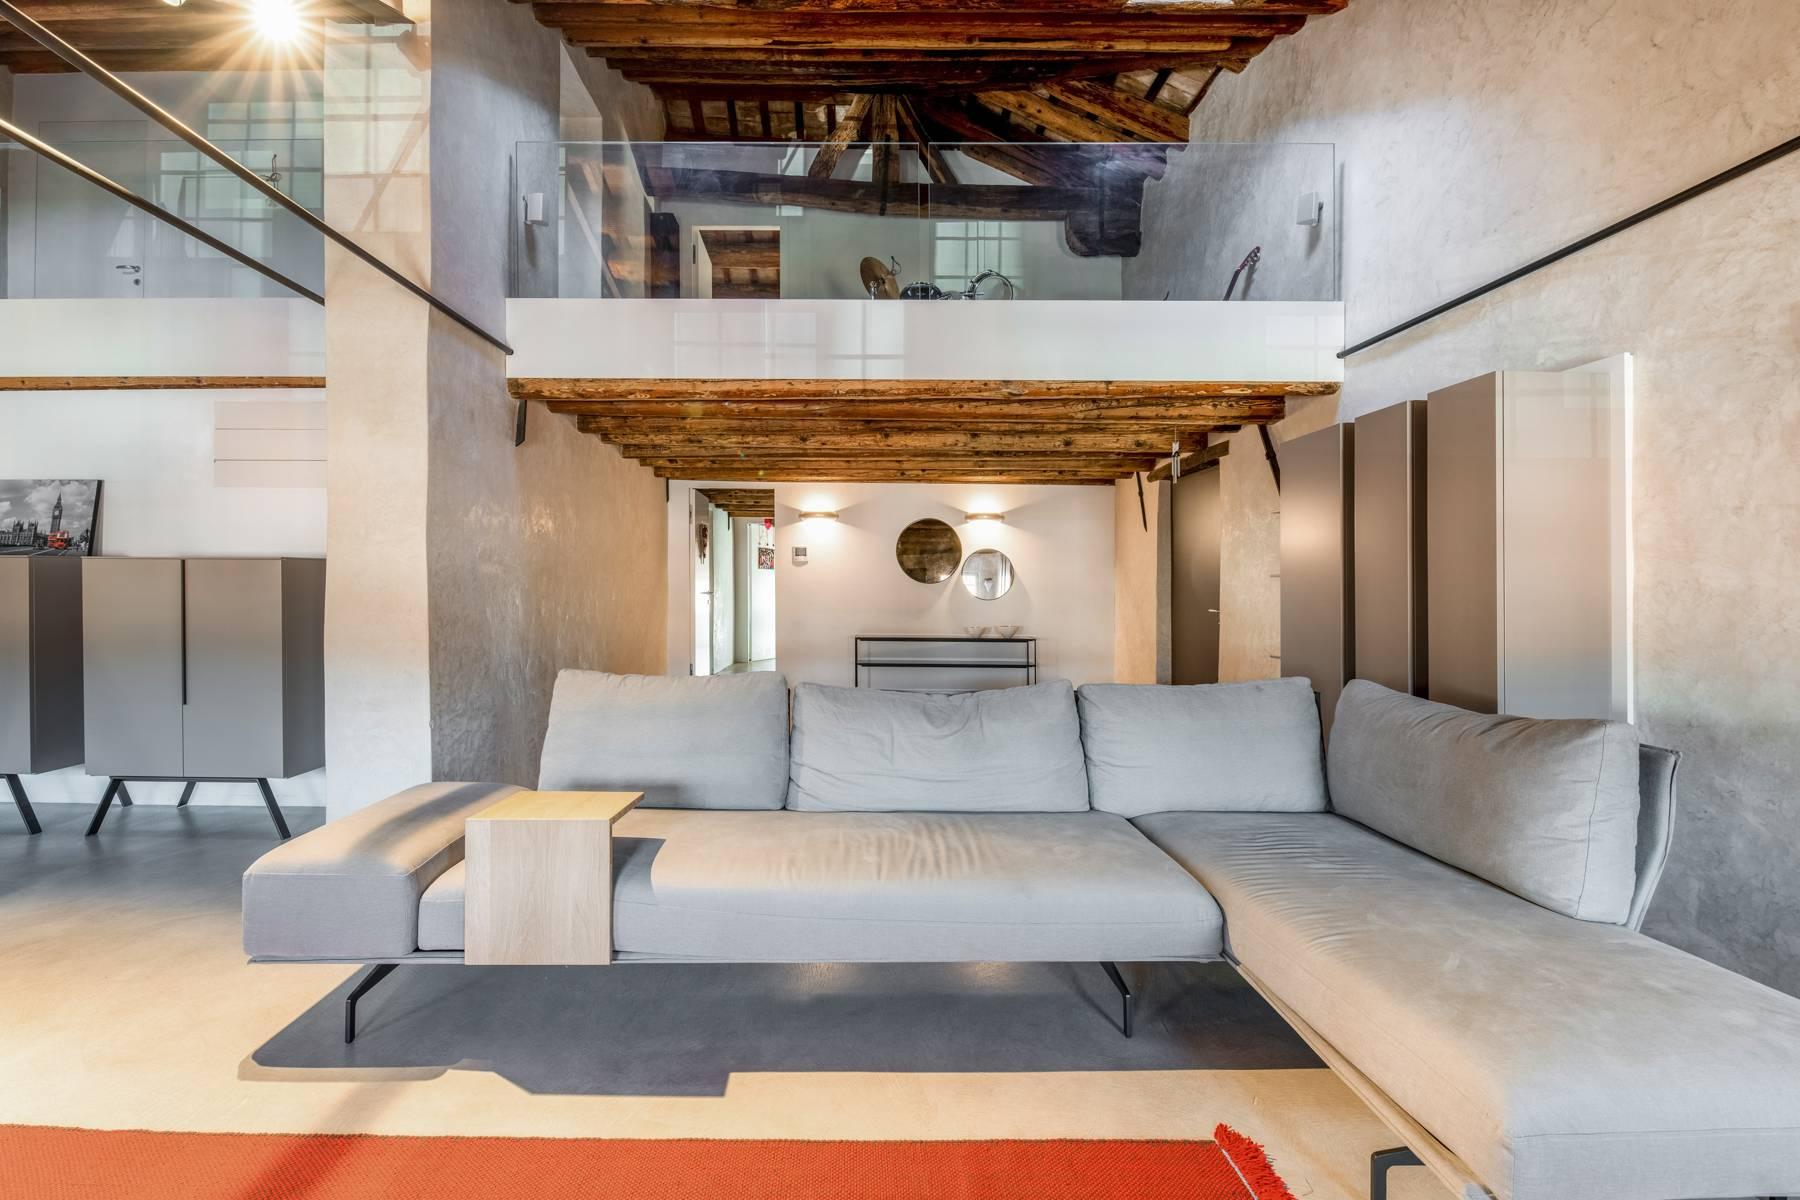 Penthouse de luxe dans une villa vénitienne du 17ème siècle entièrement rénovée - 2